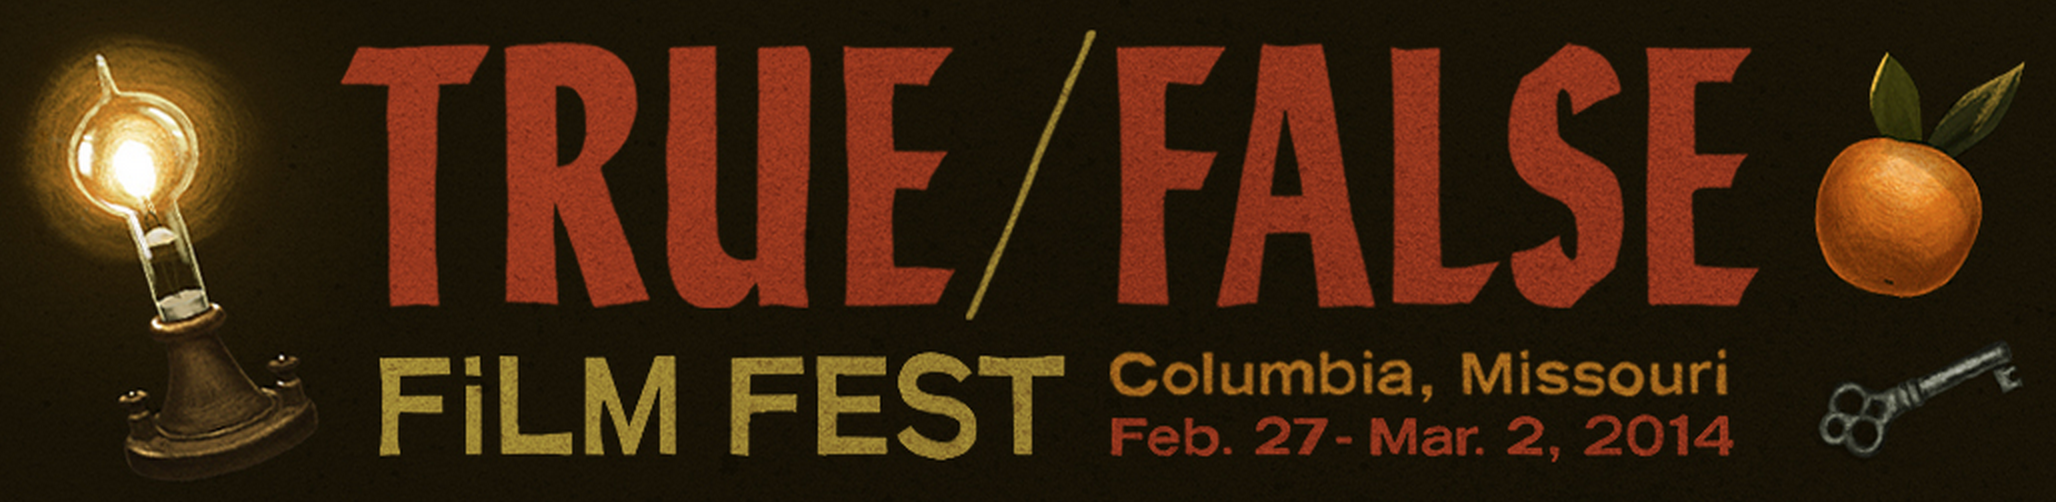 True/False Film Fest